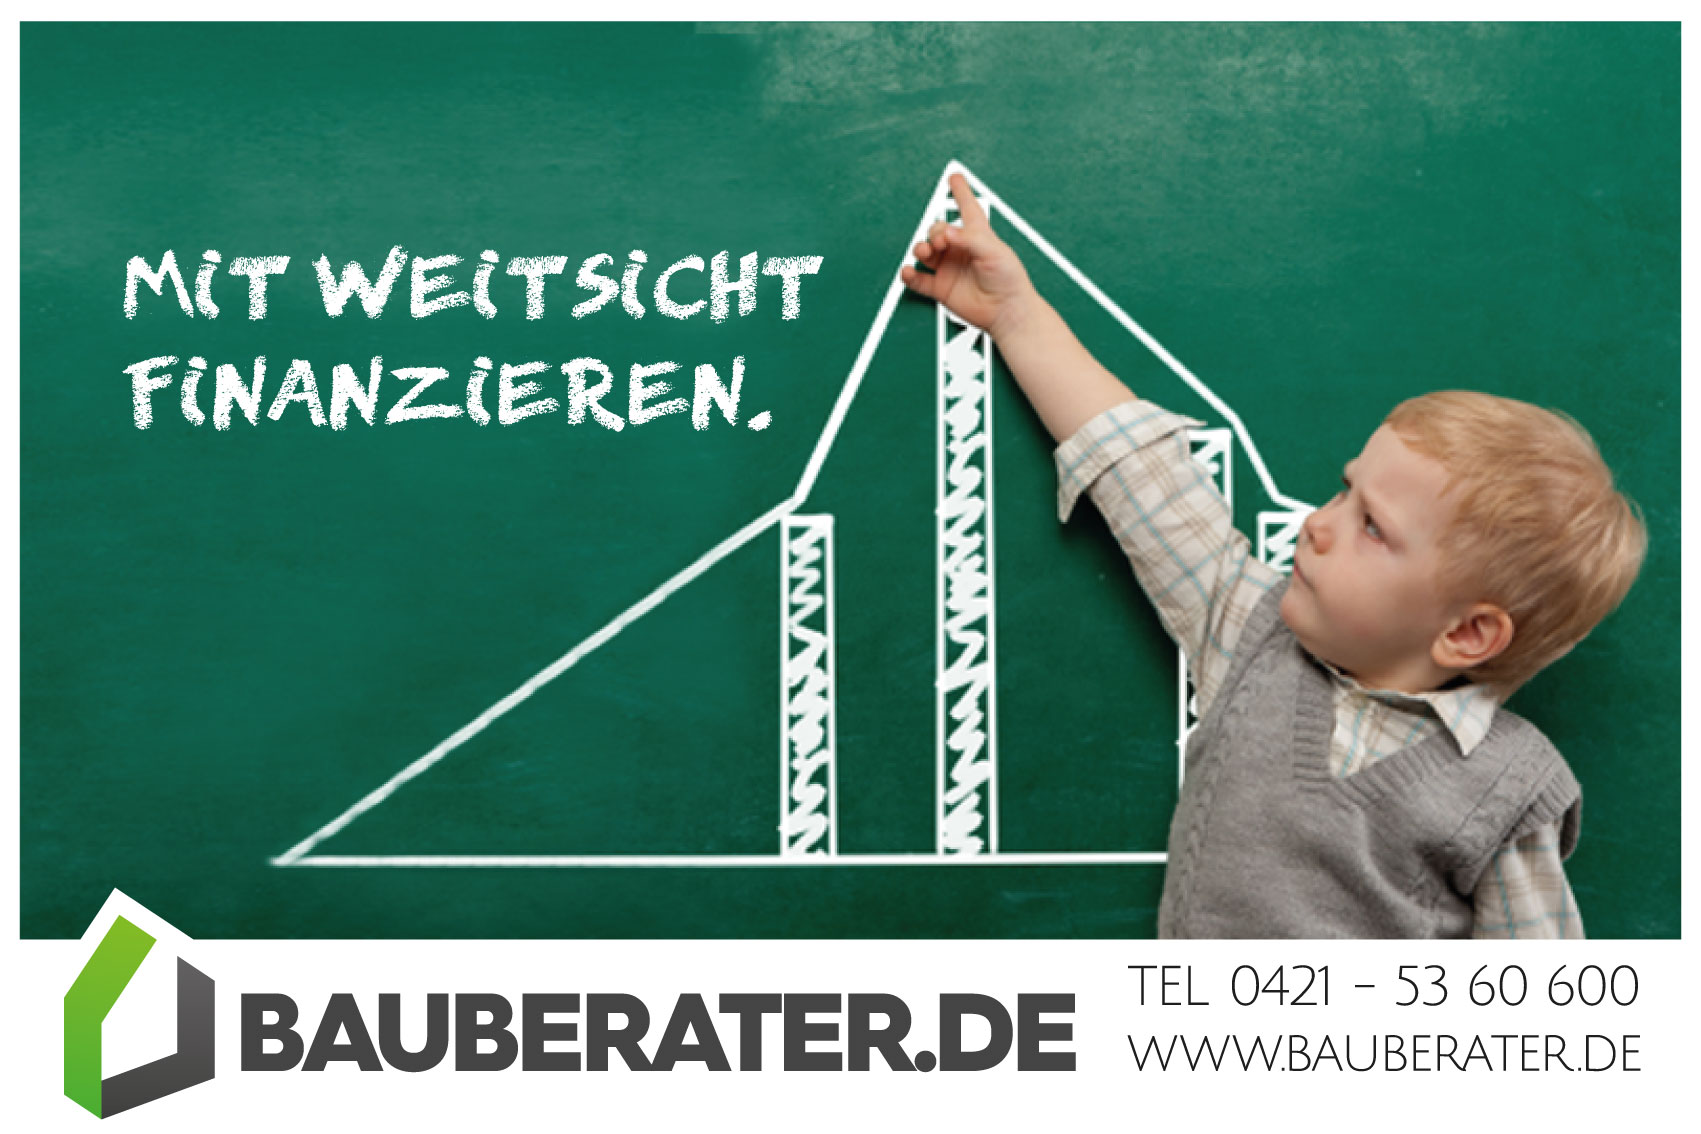 Optimale Baufinanzierung Www.bauberater.de